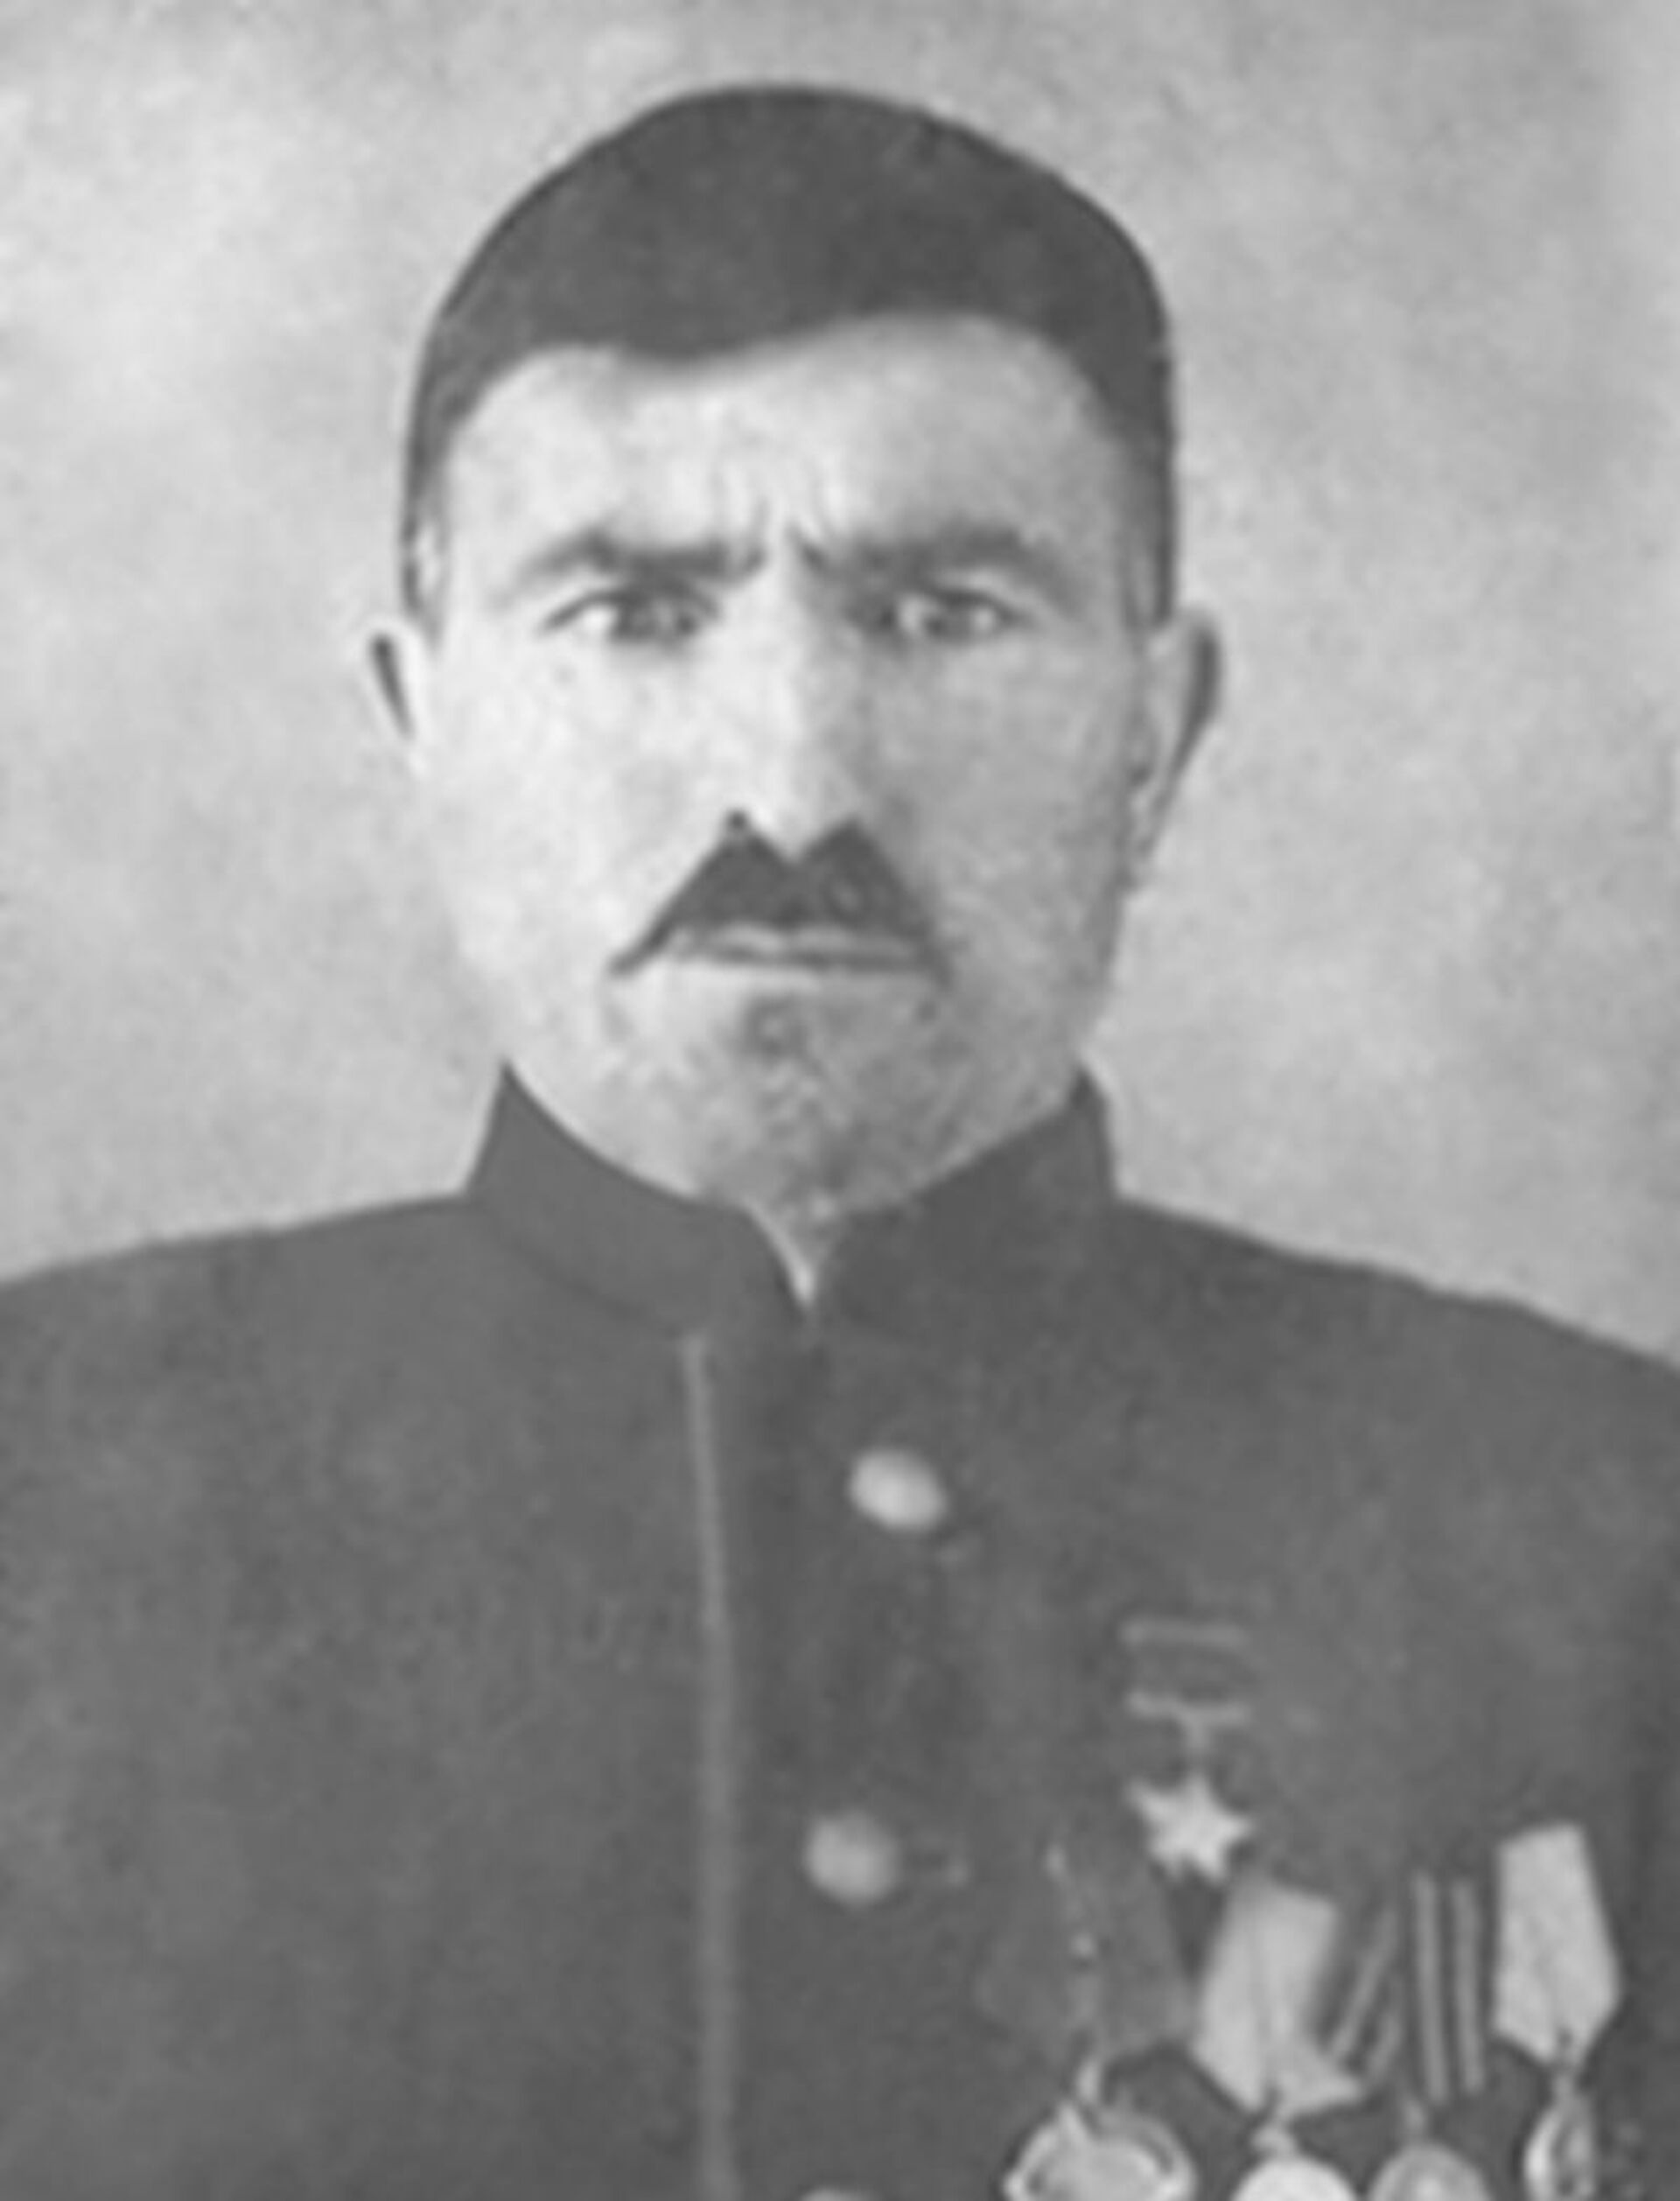 39 героев ВОВ из Азербайджана: жизнь и смерть каждого как часть великой истории  - Sputnik Азербайджан, 1920, 22.06.2021